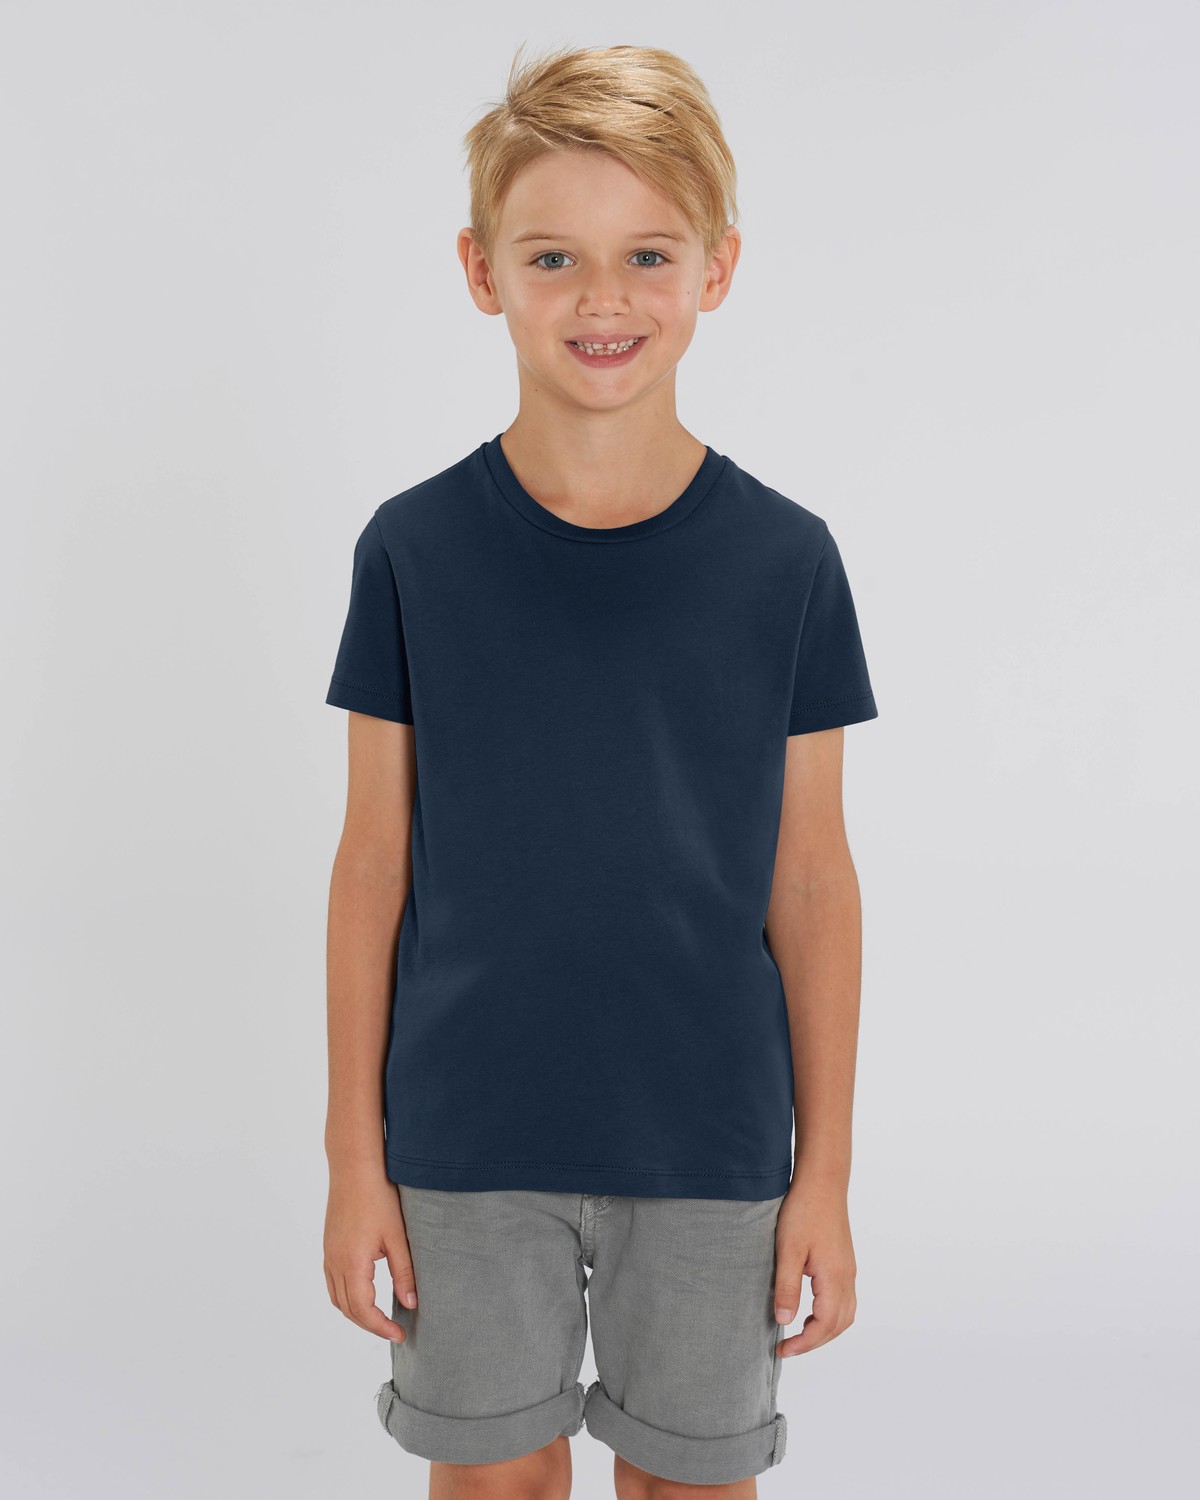 T-shirt Personnalisé Mini Creator enfant garçon noir